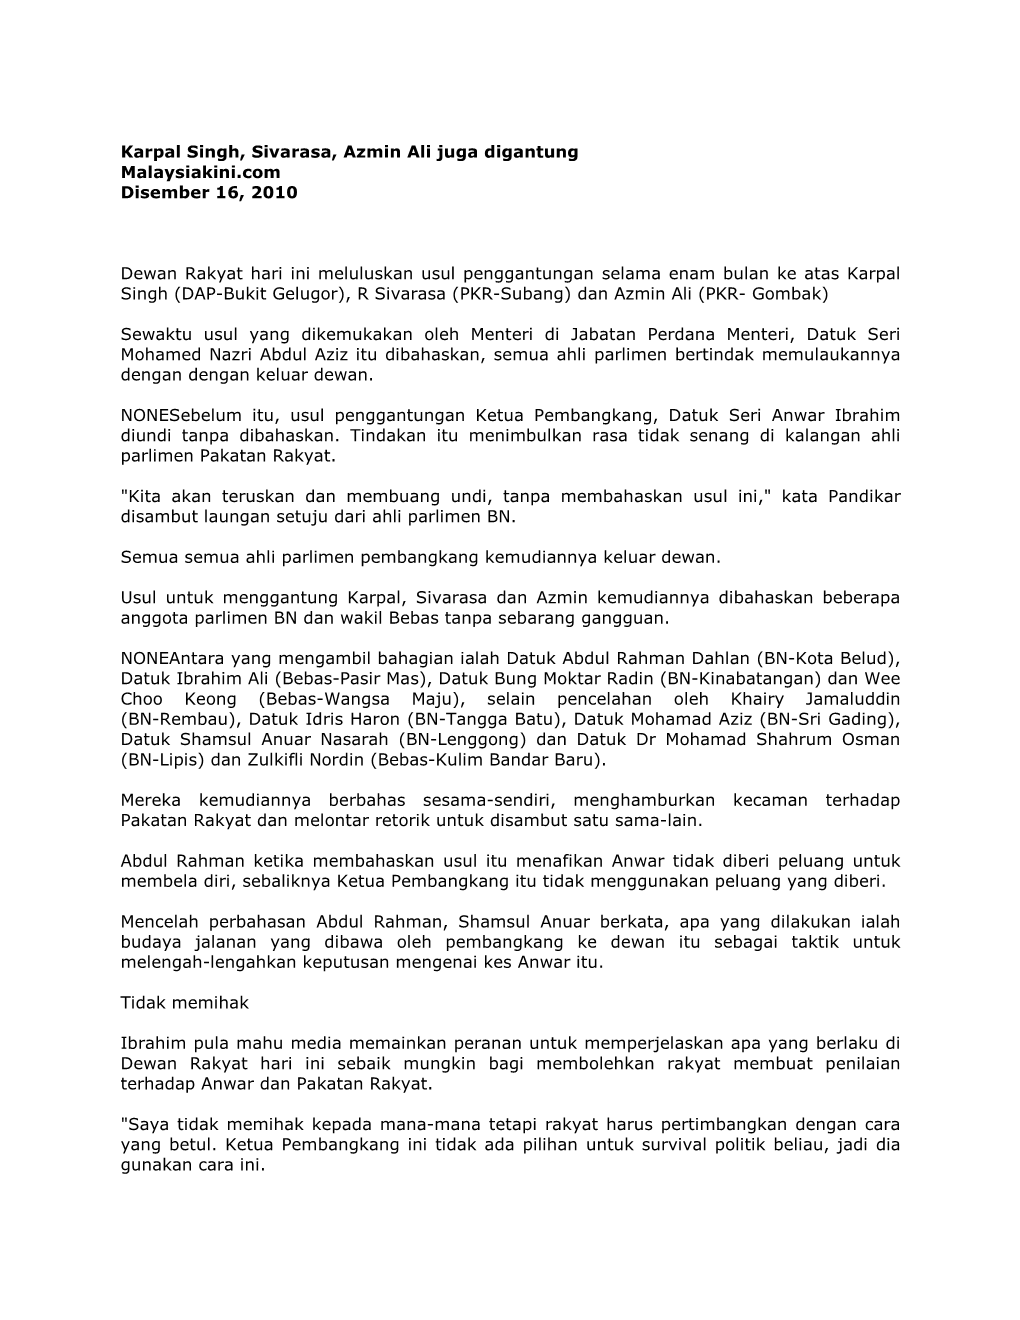 Karpal Singh, Sivarasa, Azmin Ali Juga Digantung Malaysiakini.Com Disember 16, 2010 Dewan Rakyat Hari Ini Meluluskan Usul Pengg